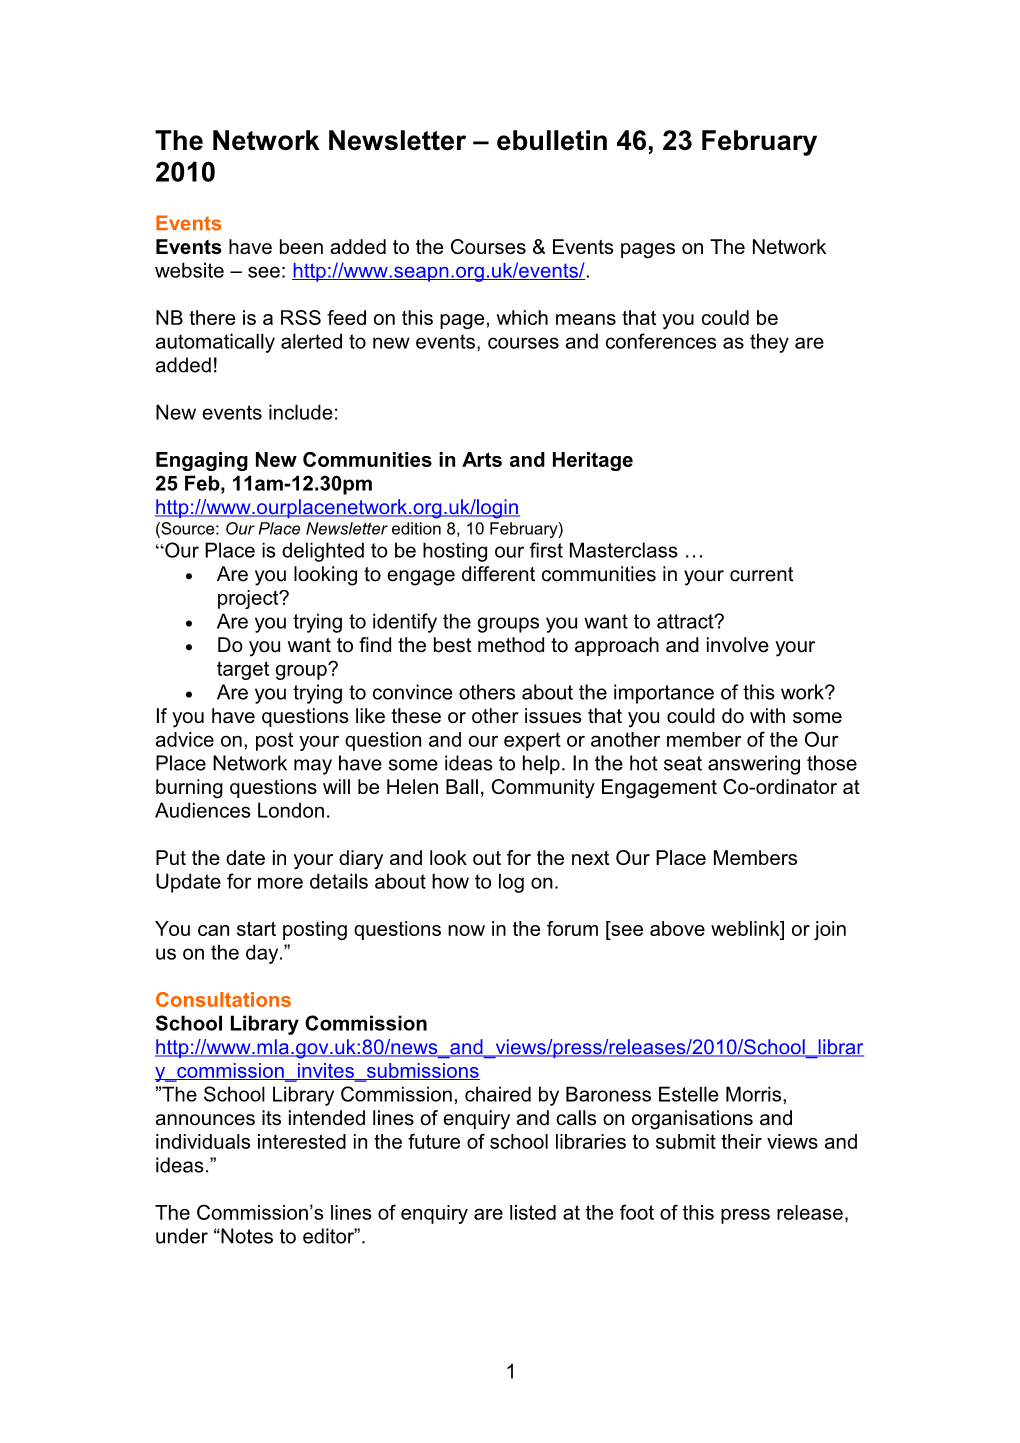 The Network Newsletter Ebulletin 1, 14 April 2008 s3